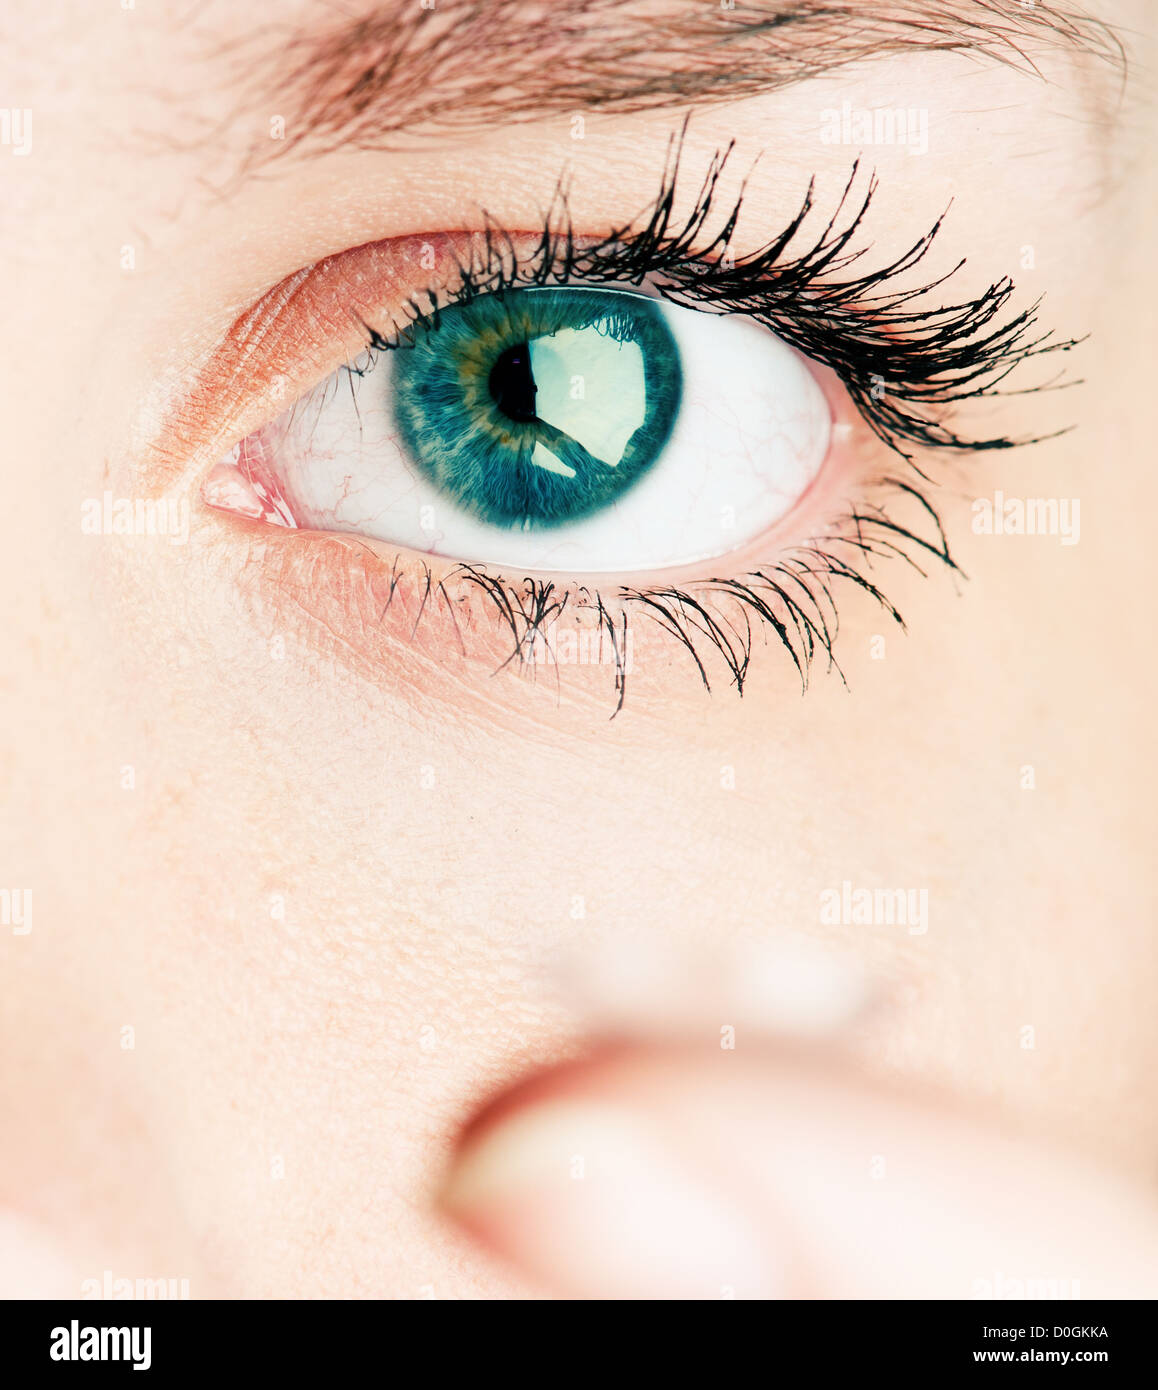 Cerca de la inserción de una lente de contacto en el ojo femenino Foto de stock